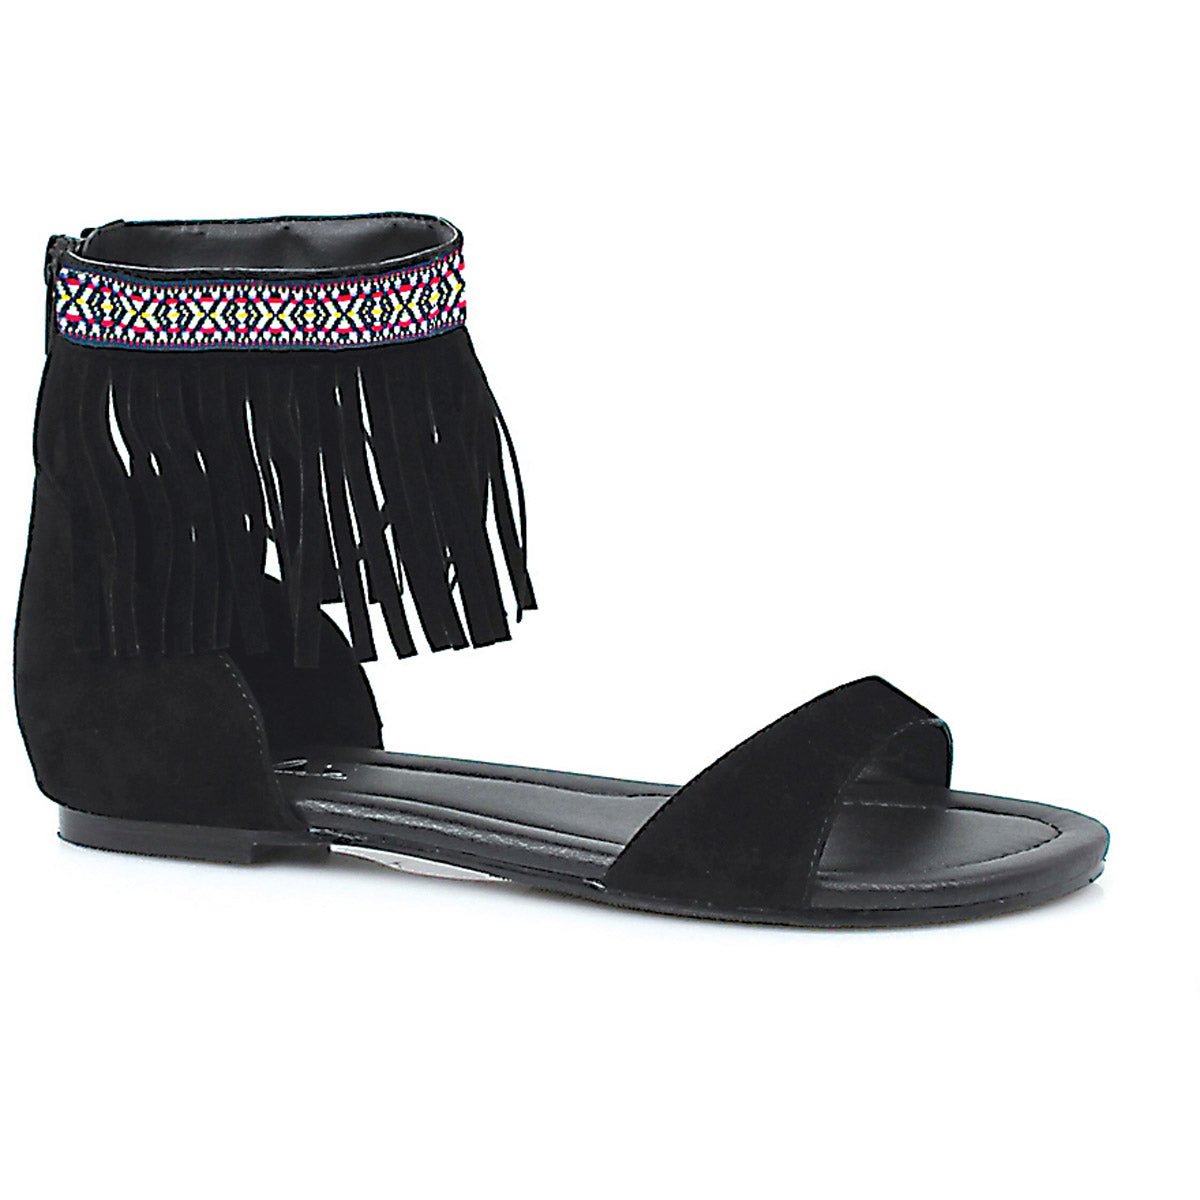 Tribal fringe native flat sandal with embroidered details Ellie  015/HENA/BLK